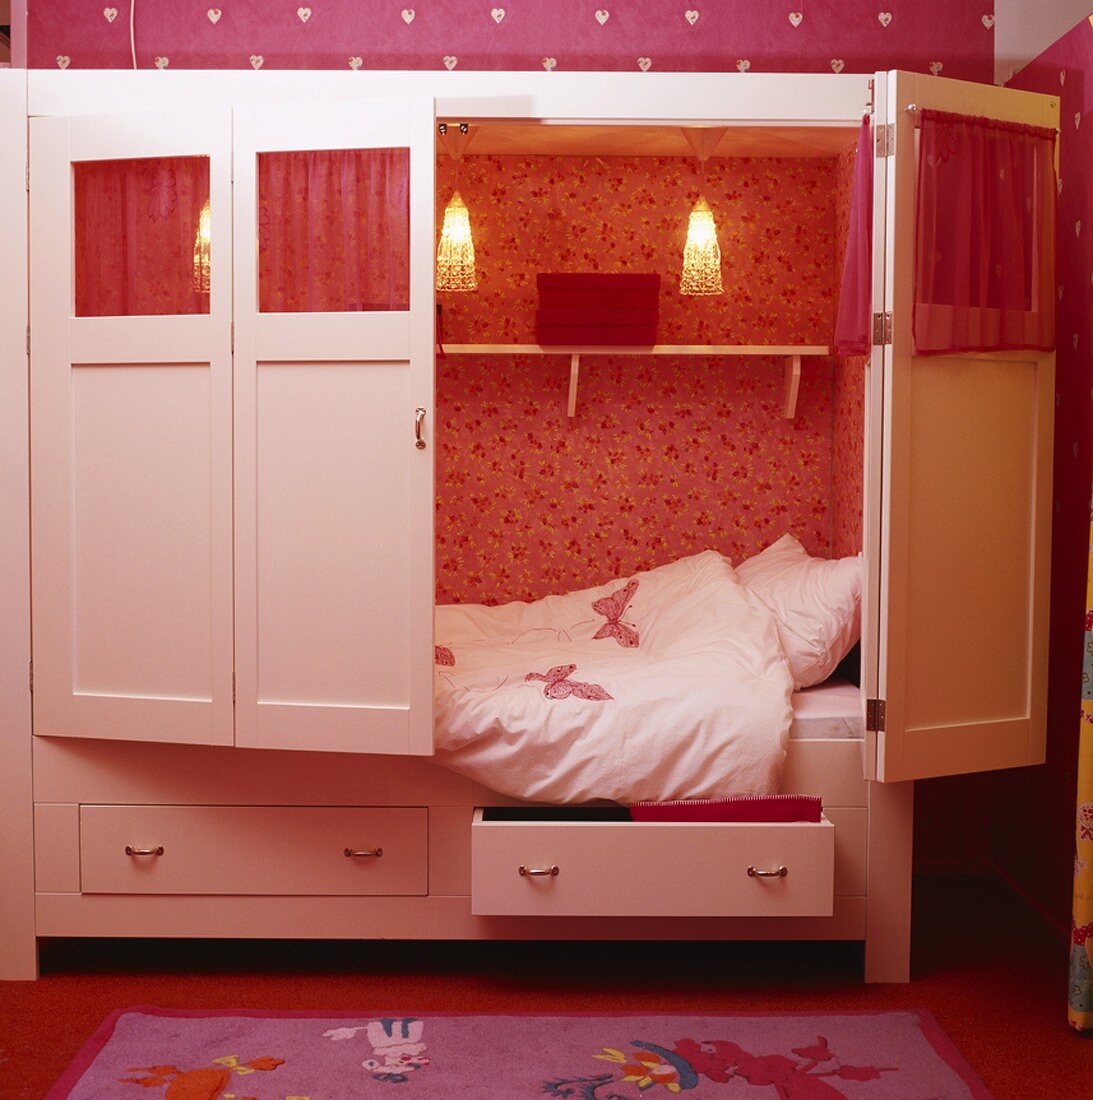 Alkovenartiges Schrankbett mit Schmetterlingsmotiven im Kinderzimmer